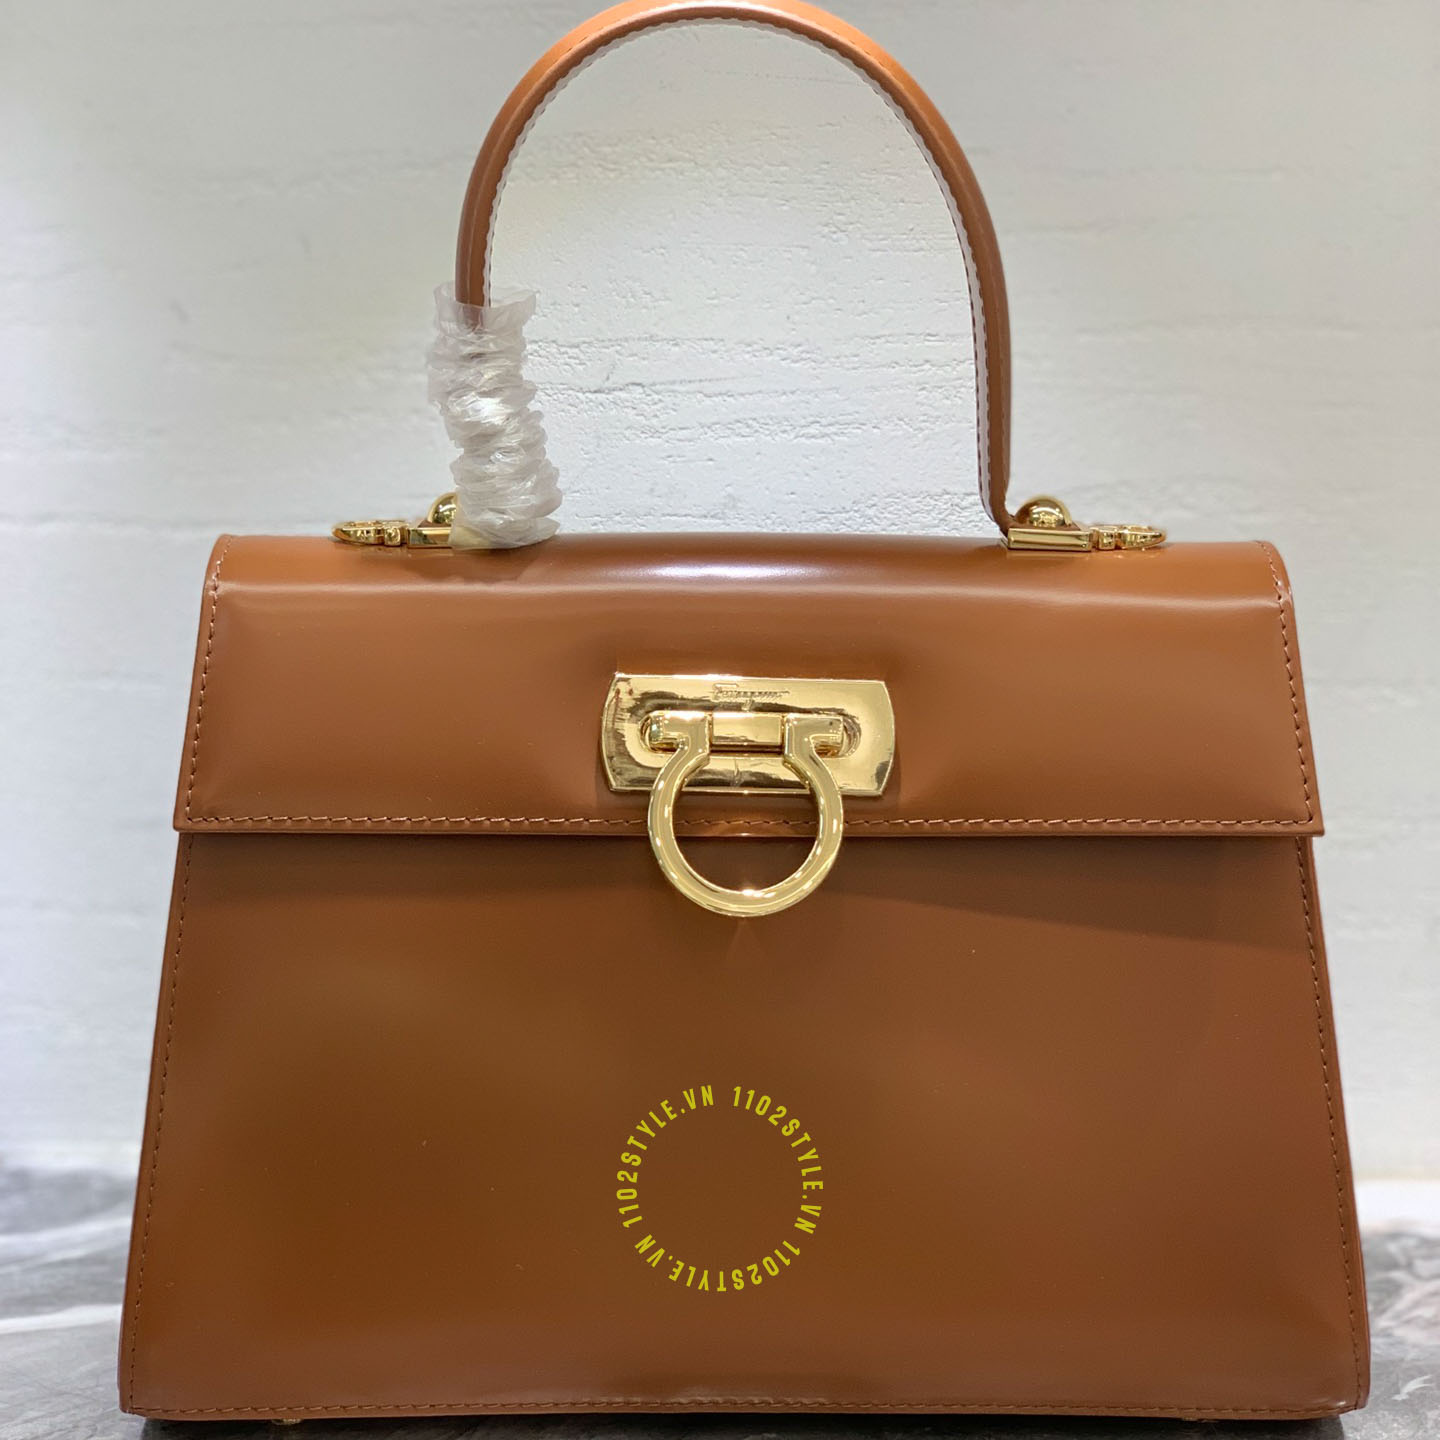 Túi xách nữ Chanel xích vàng khóa đá 3 màu lạ mắt - TXNC-049 - 97Luxury